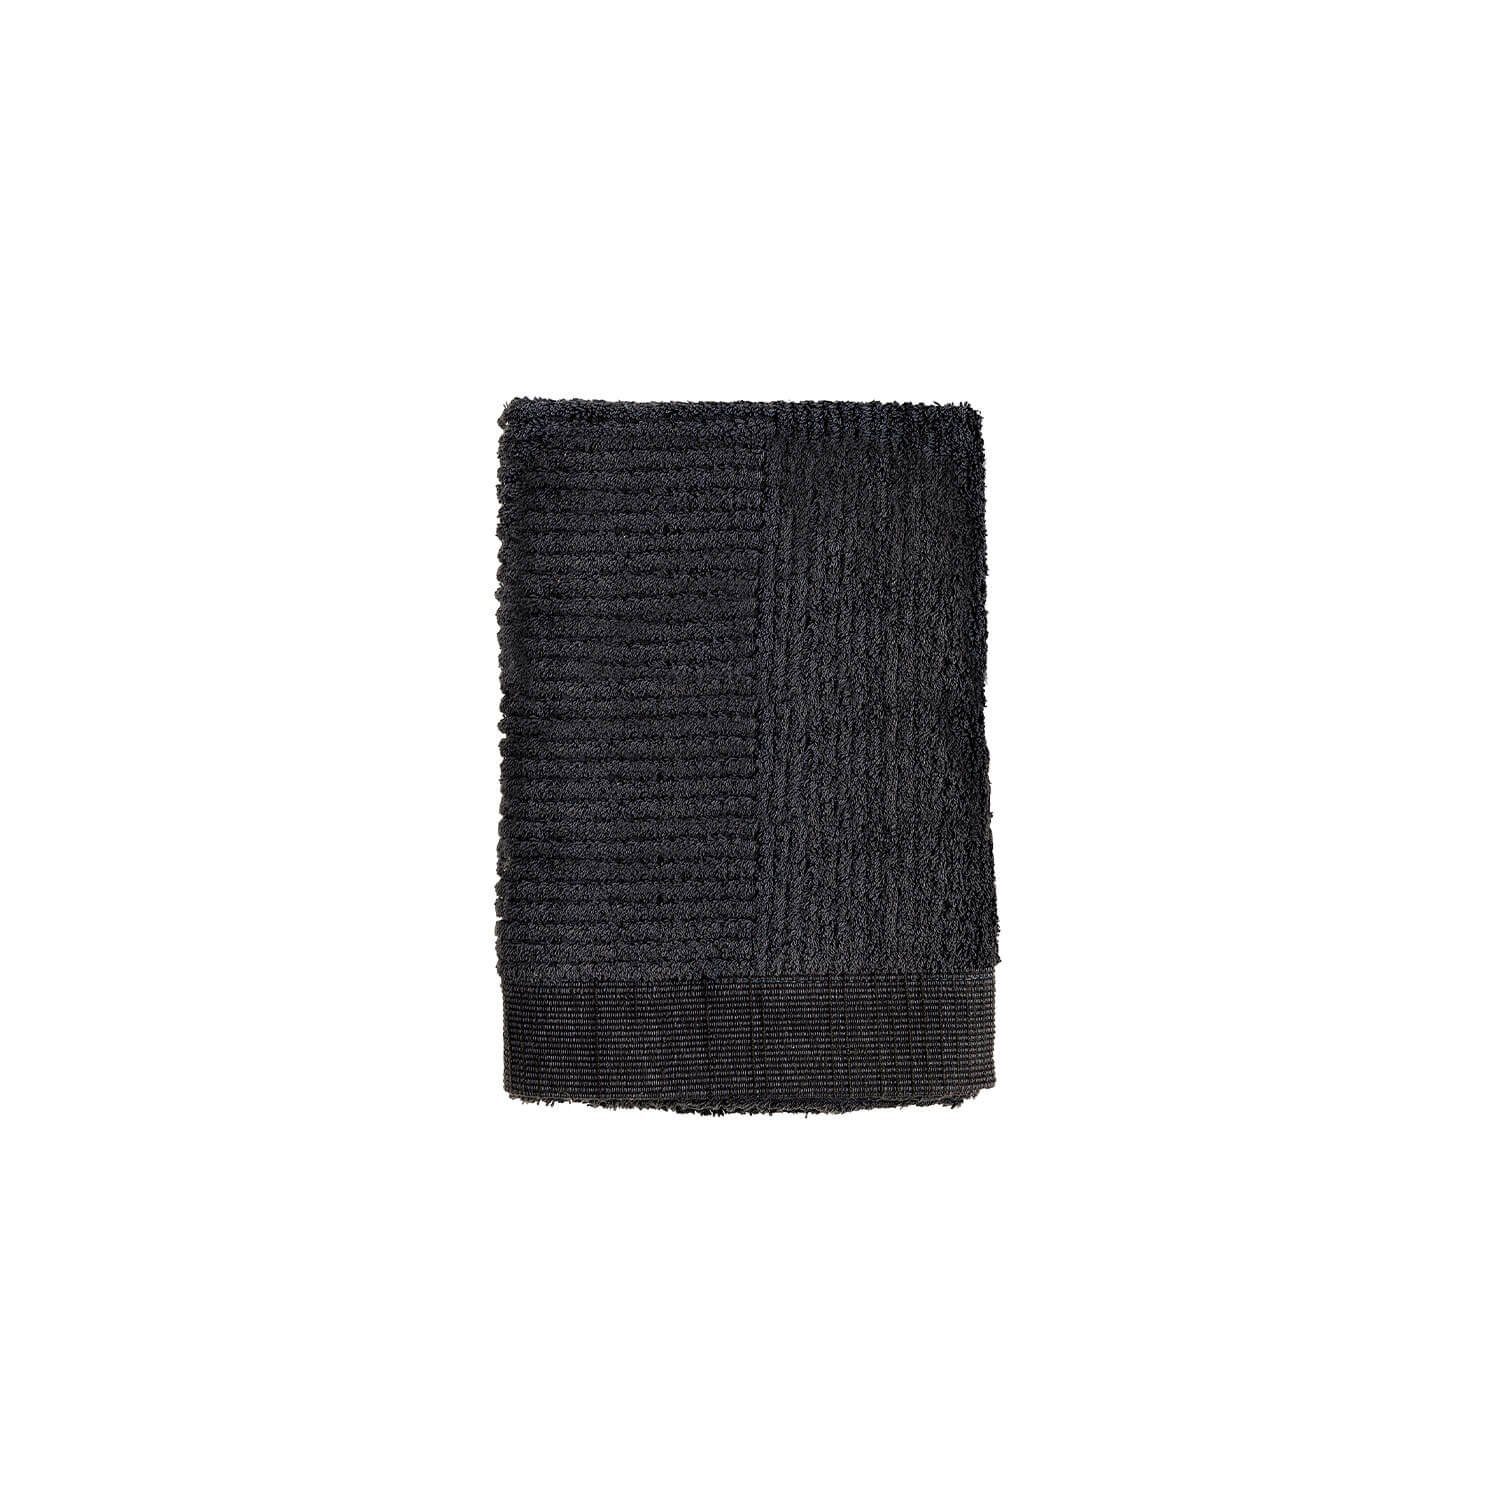 x cm, 70 Zone % Denmark Baumwolle CLASSIC Gästehandtuch 50 schwarz 100 Handtücher Bio-Tex-zertifizierter